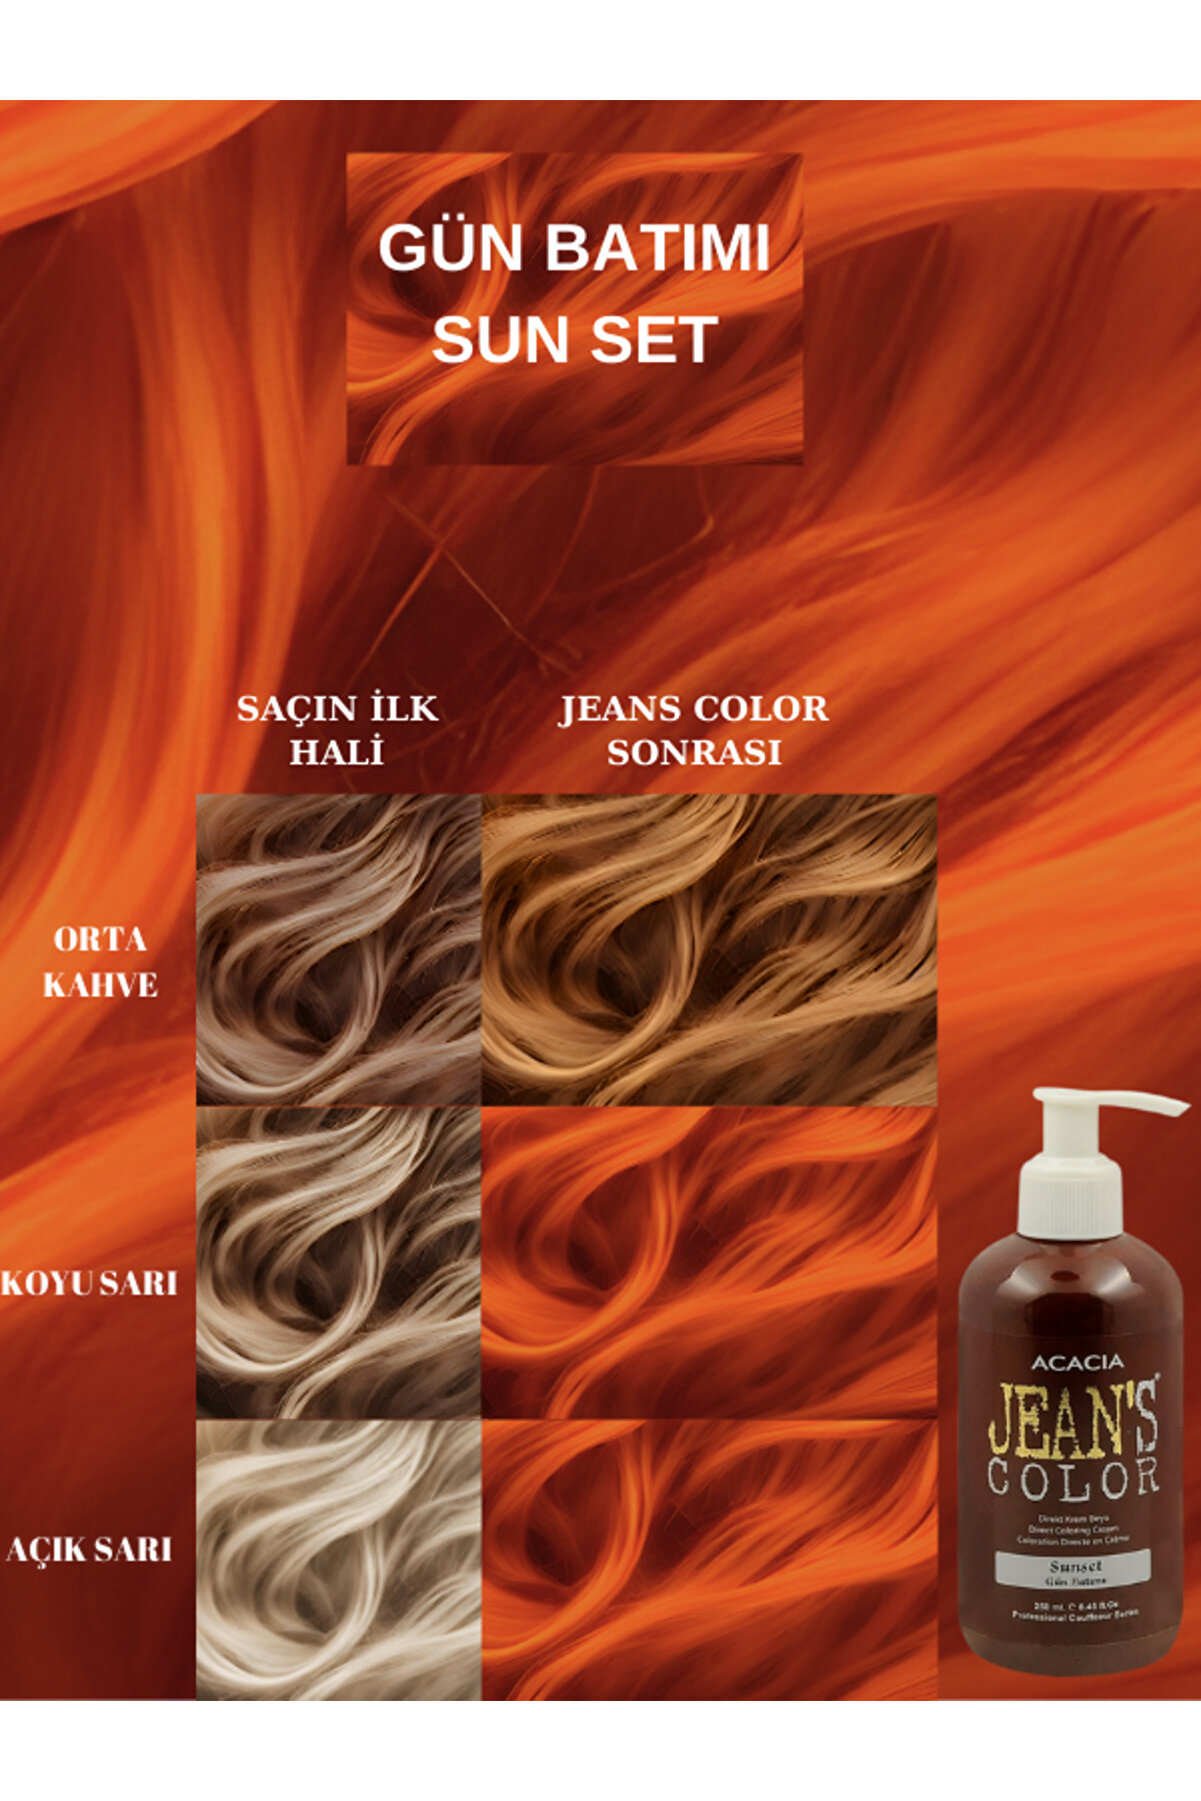 Acacia Jean's Color Gün Batımı Sunset 250ml Amonyaksız Balyaj Renkli Saç Boyası